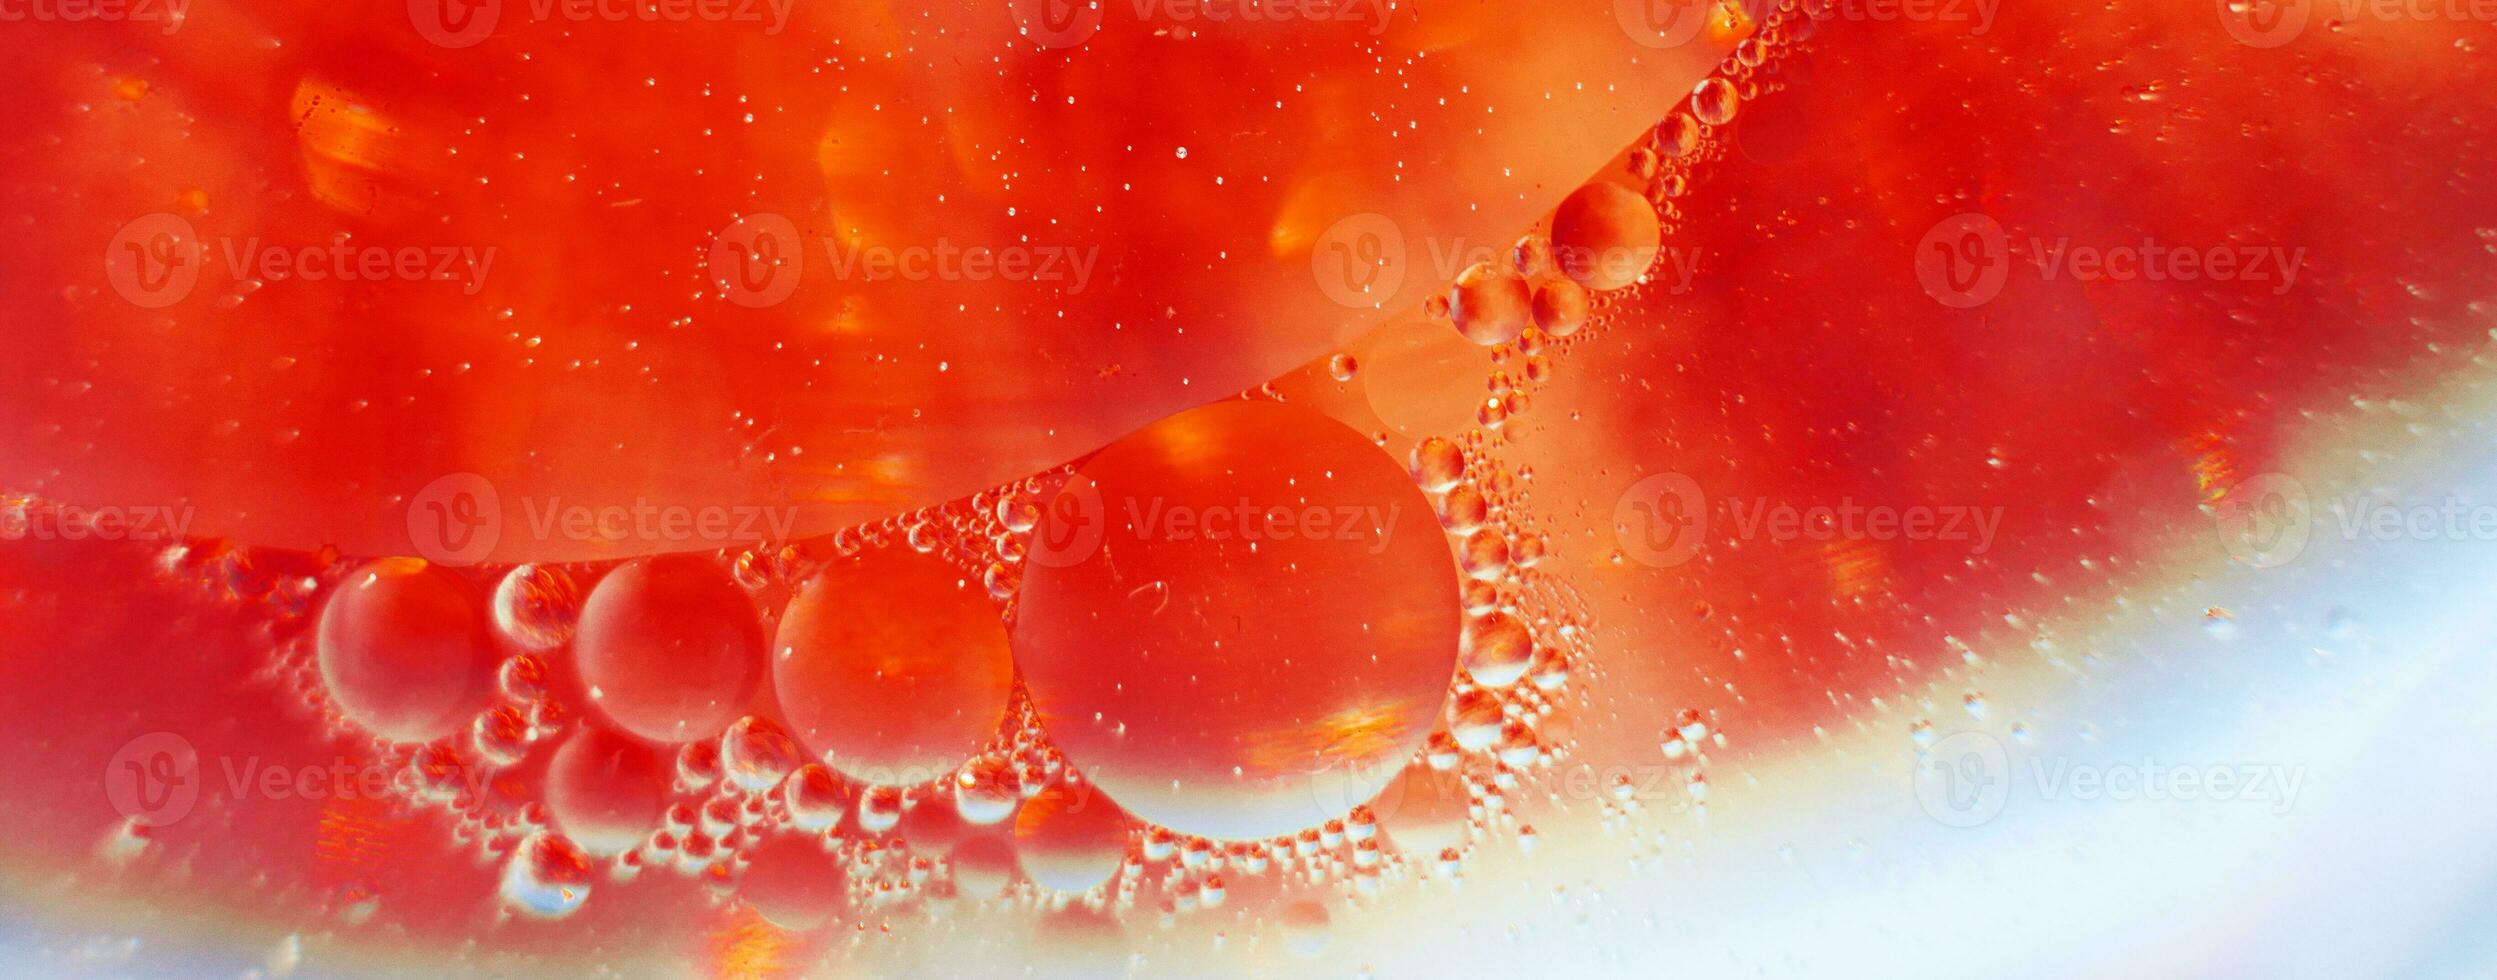 bolhas de óleo fecham. círculos de macro de água. abstrato laranja e vermelho ardente. bandeira foto